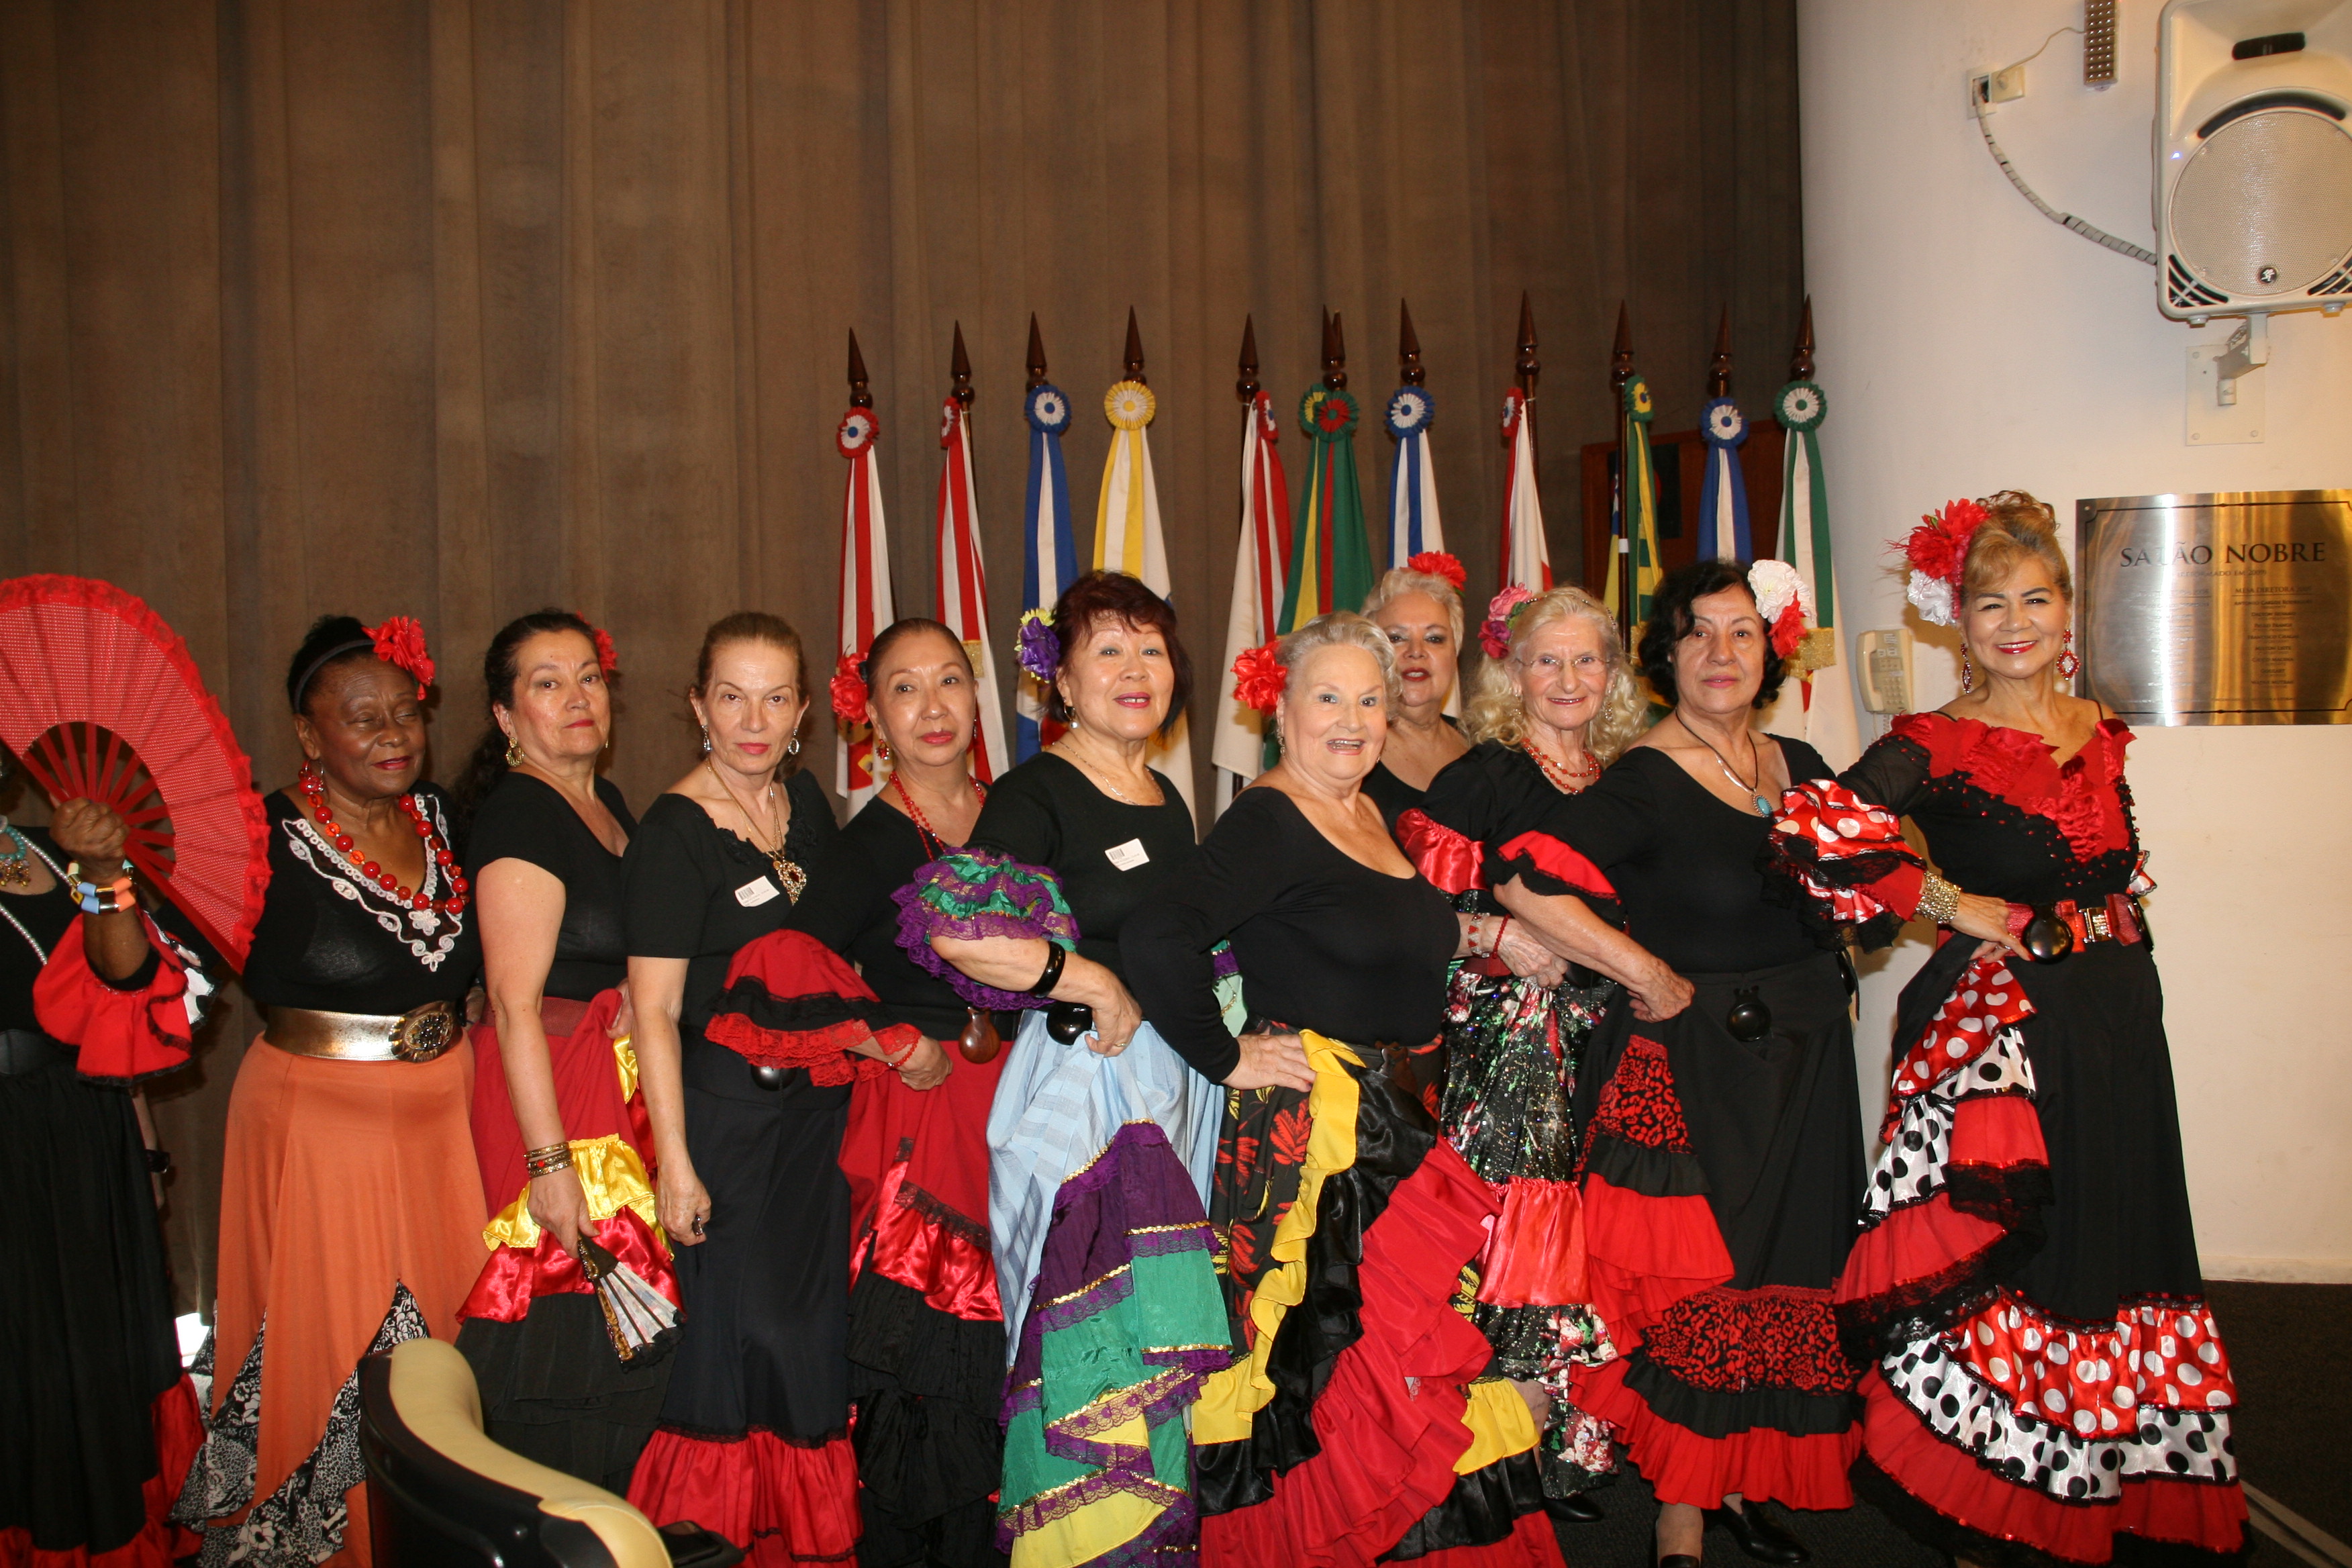 Mulheres vestidas de espanholas reunidas para dançar juntas em pose